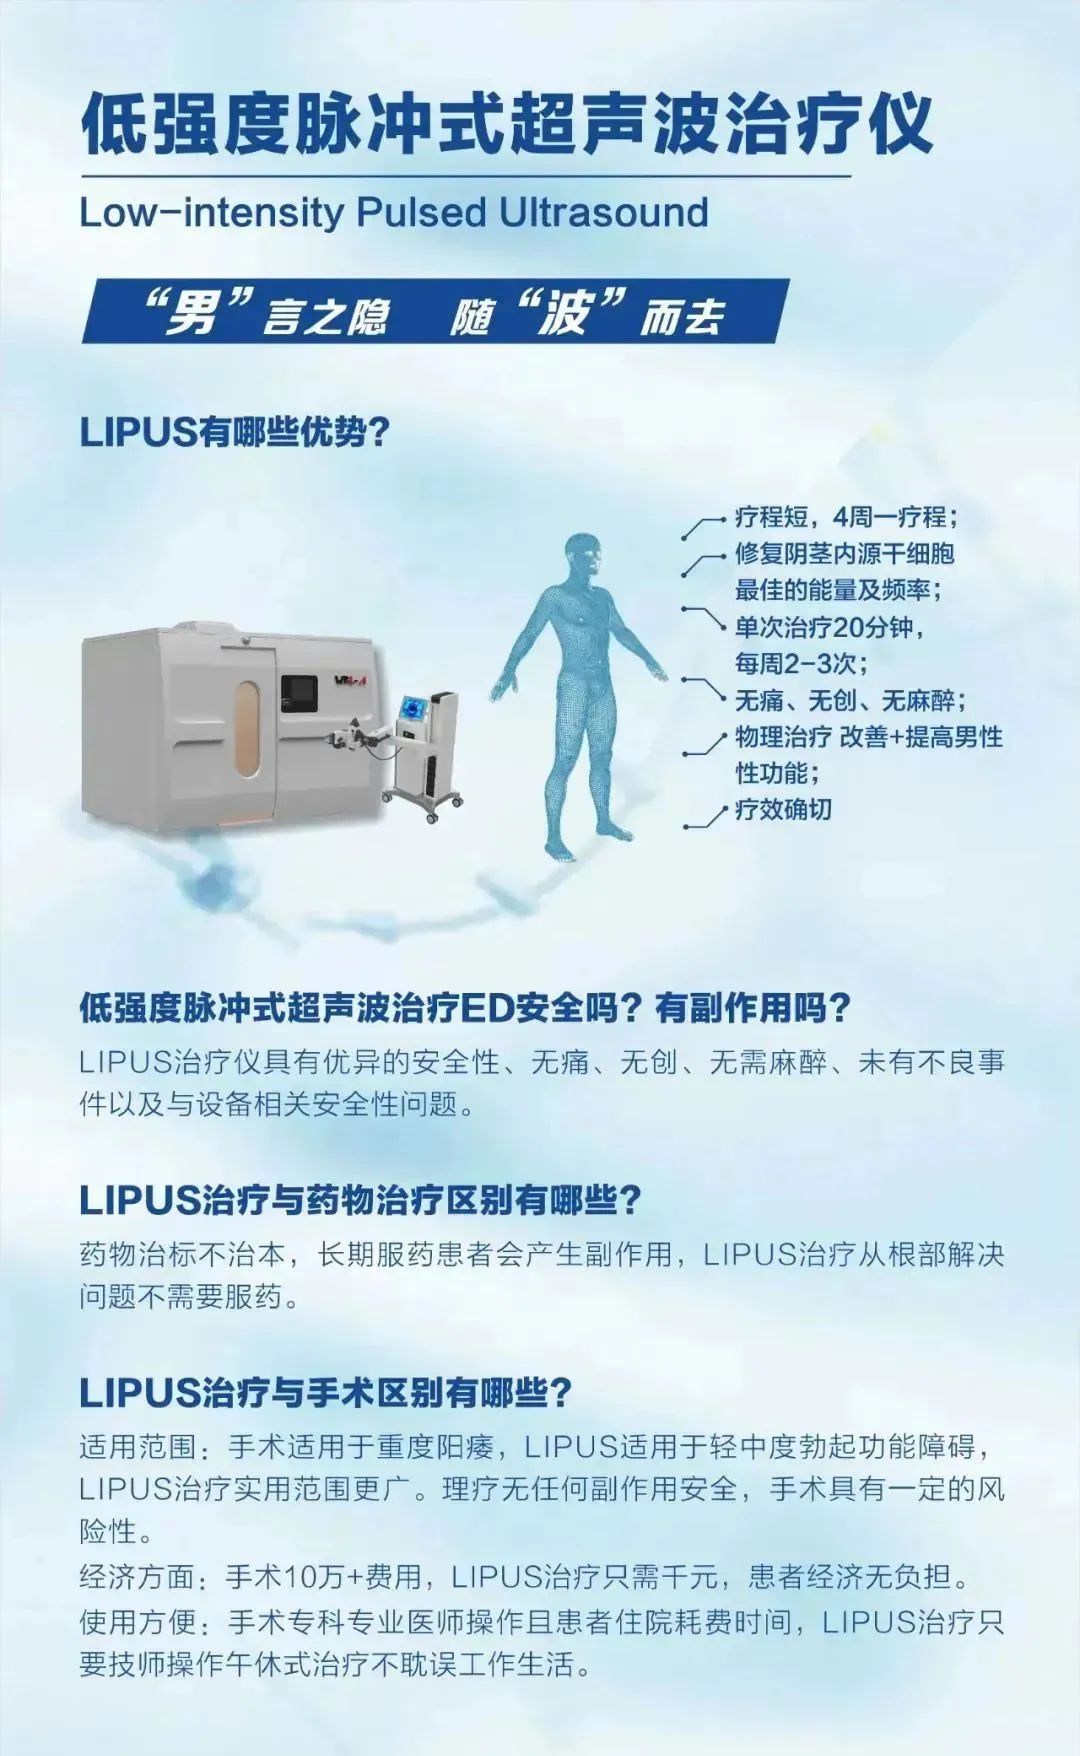 LIPUS低强度脉冲式超声波治疗仪